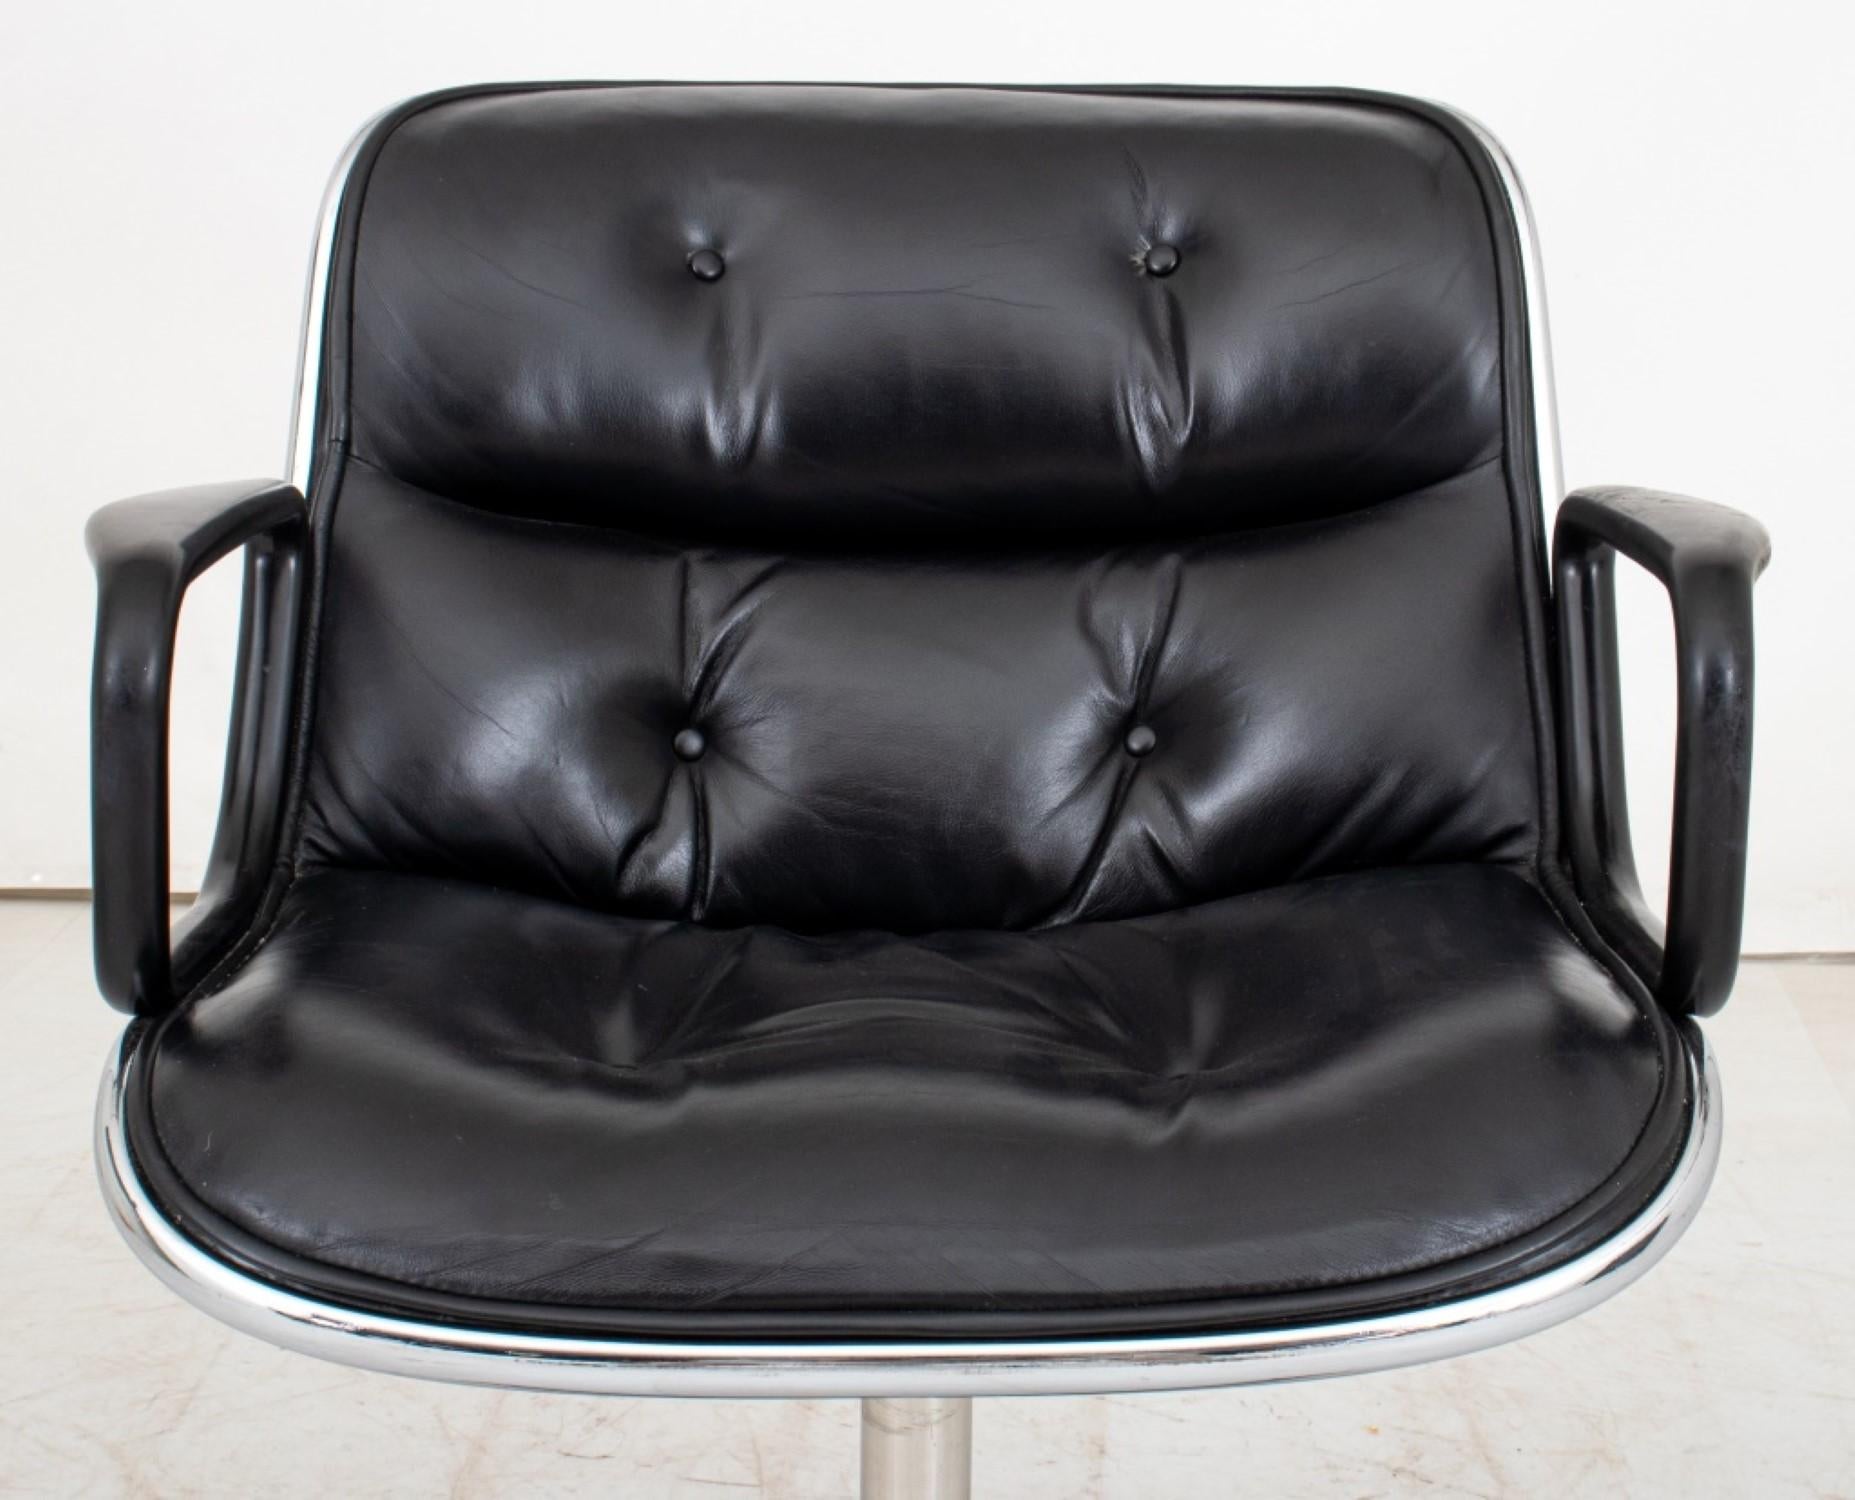 Harles Pollock Executive Office Chair for Knoll International (1963)

Design/One : Assise et dossier en cuir noir boutonné sur une base chromée à quatre roulettes.

Dimensions : 32.25